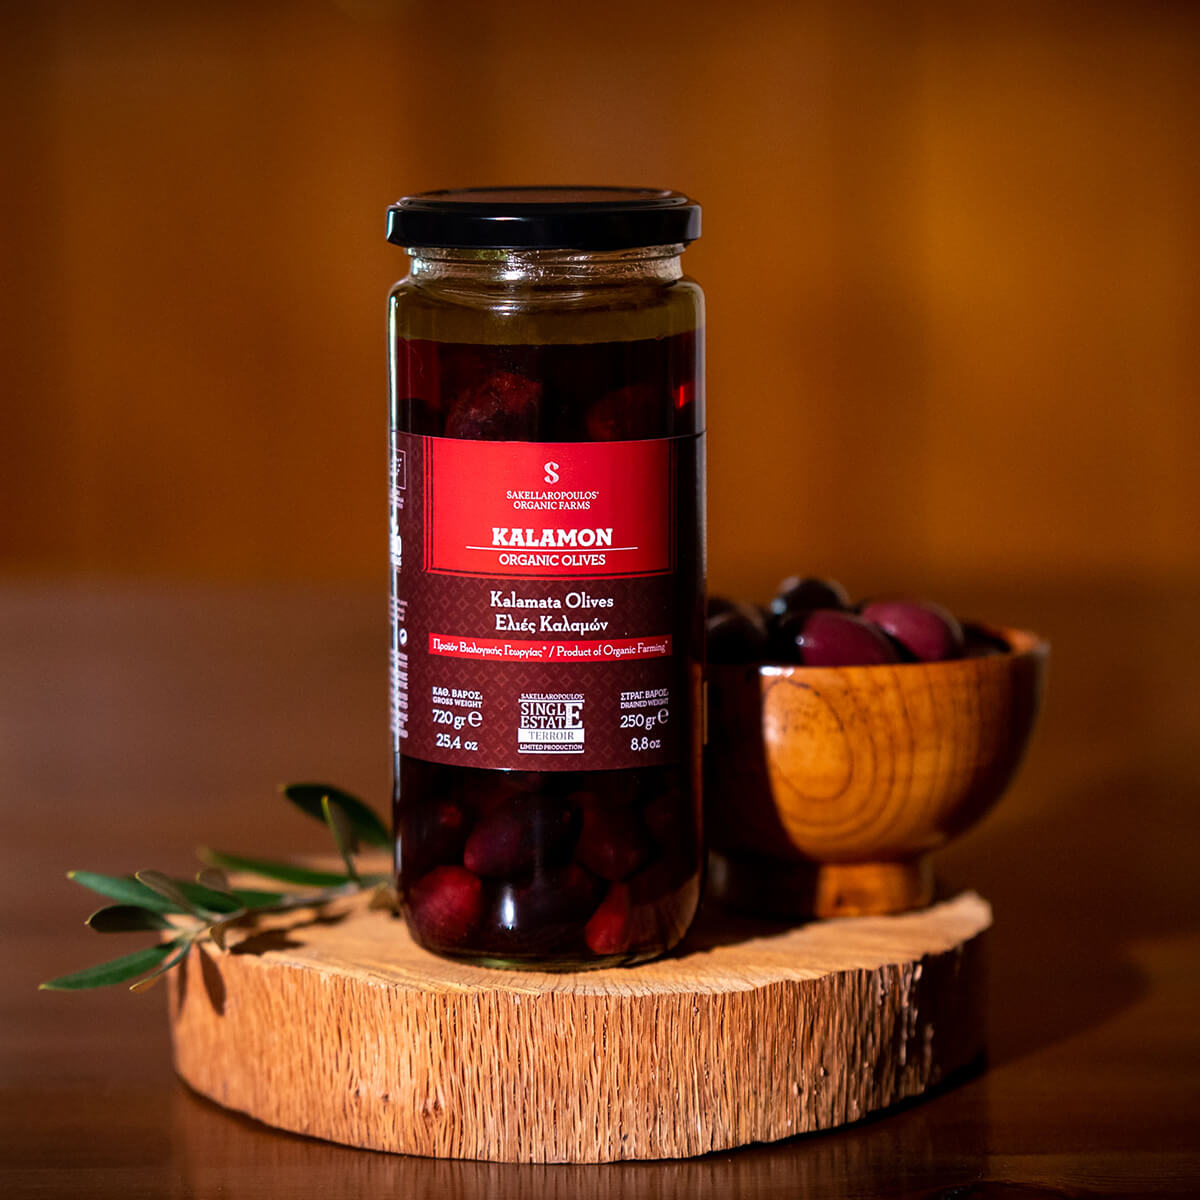 ελιές φυσικές καλαμών βραβεία gourmet olives superior kalamata organic βιολογικές